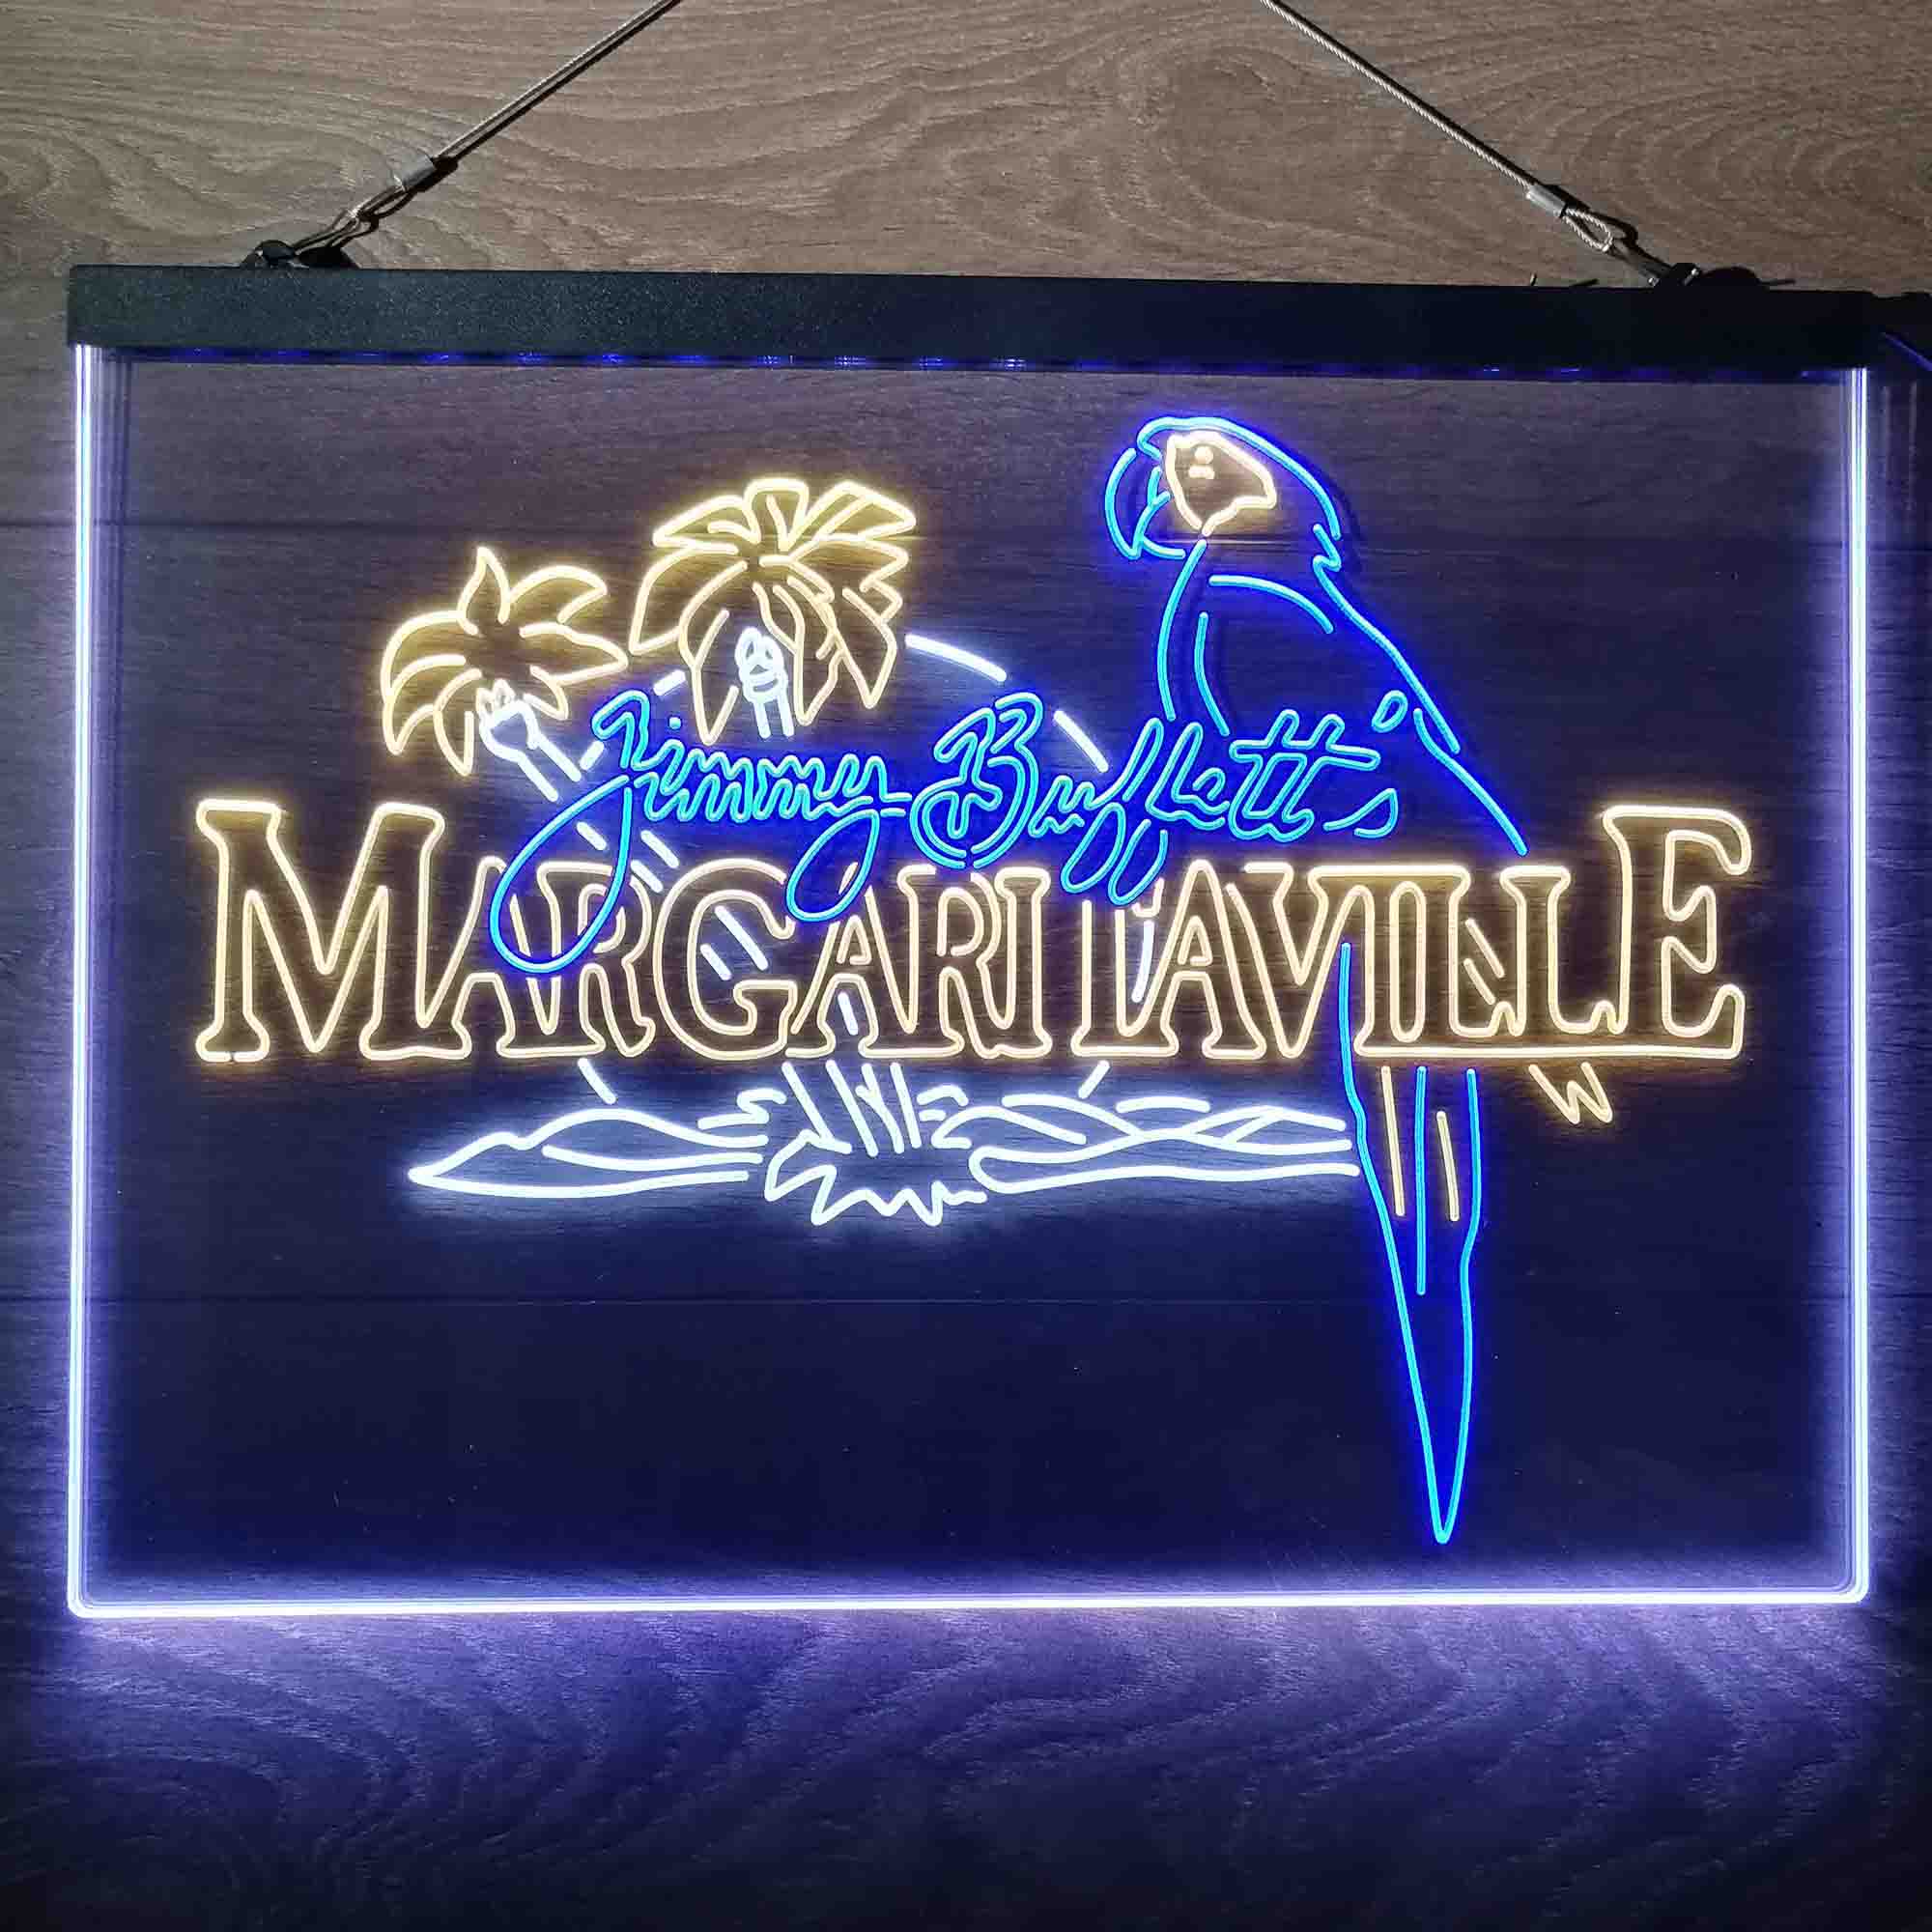 Margaritaville Jimmy Buffett Parrot Neon-Like LED Sign